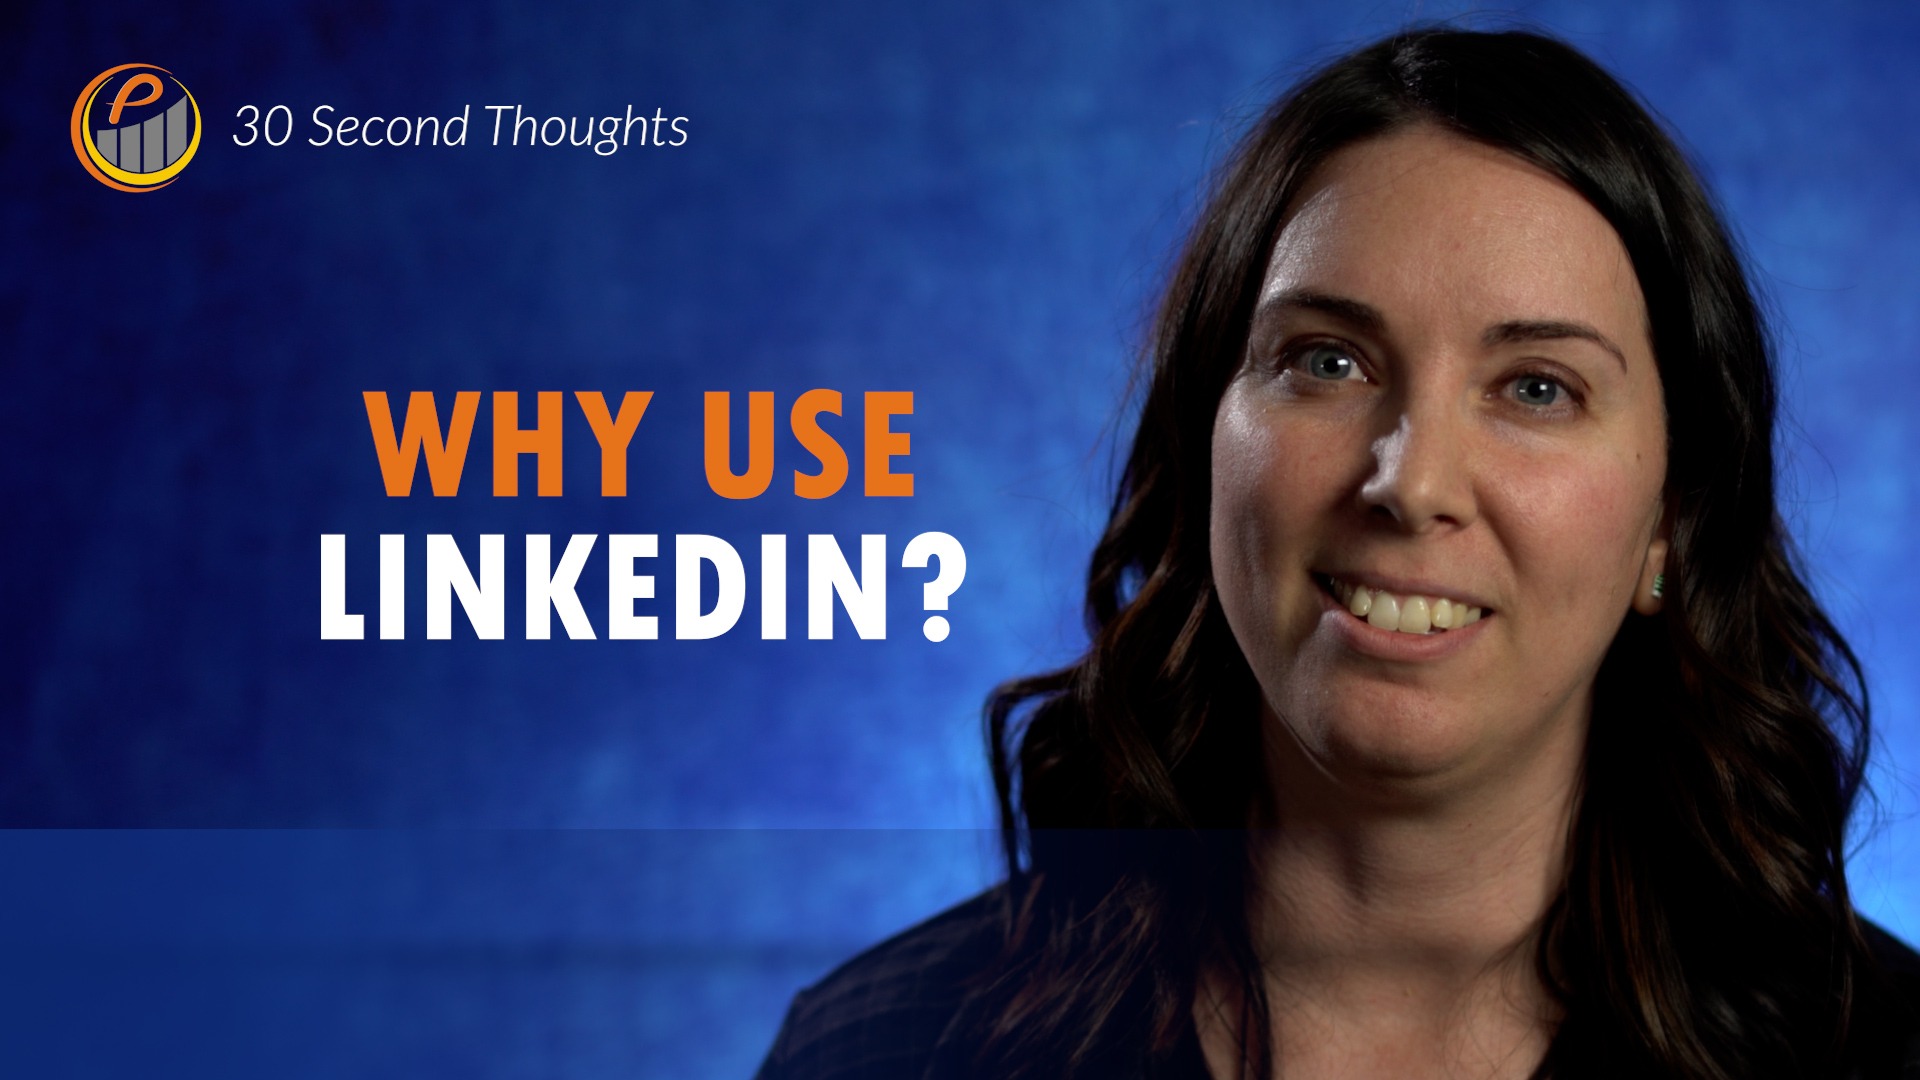 Why Use LinkedIn?